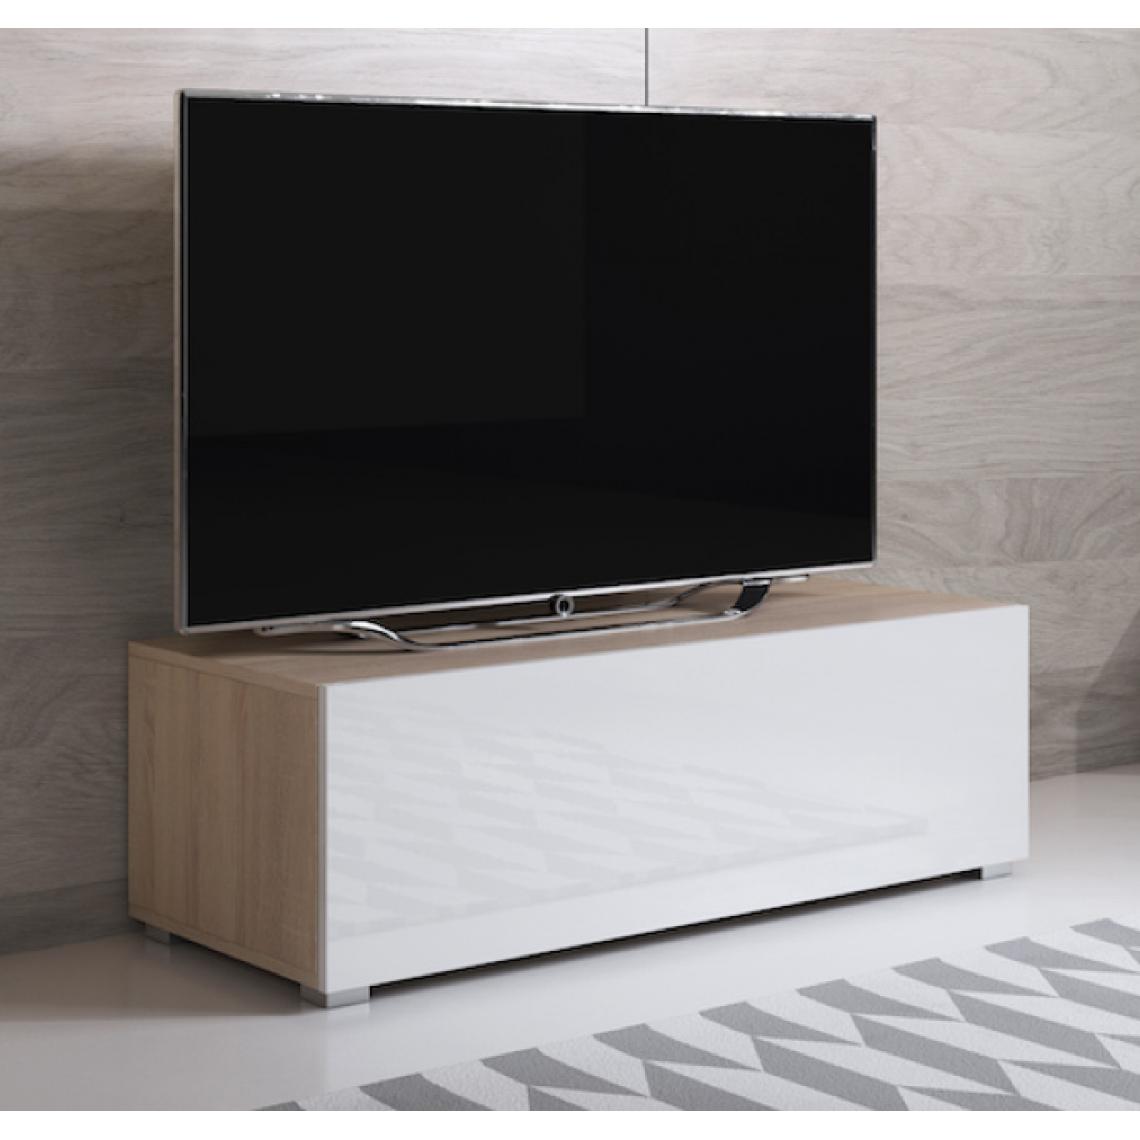 Design Ameublement - Meuble TV modèle Luke H1 (100x32cm) couleur sonoma et blanc avec pieds standard - Meubles TV, Hi-Fi